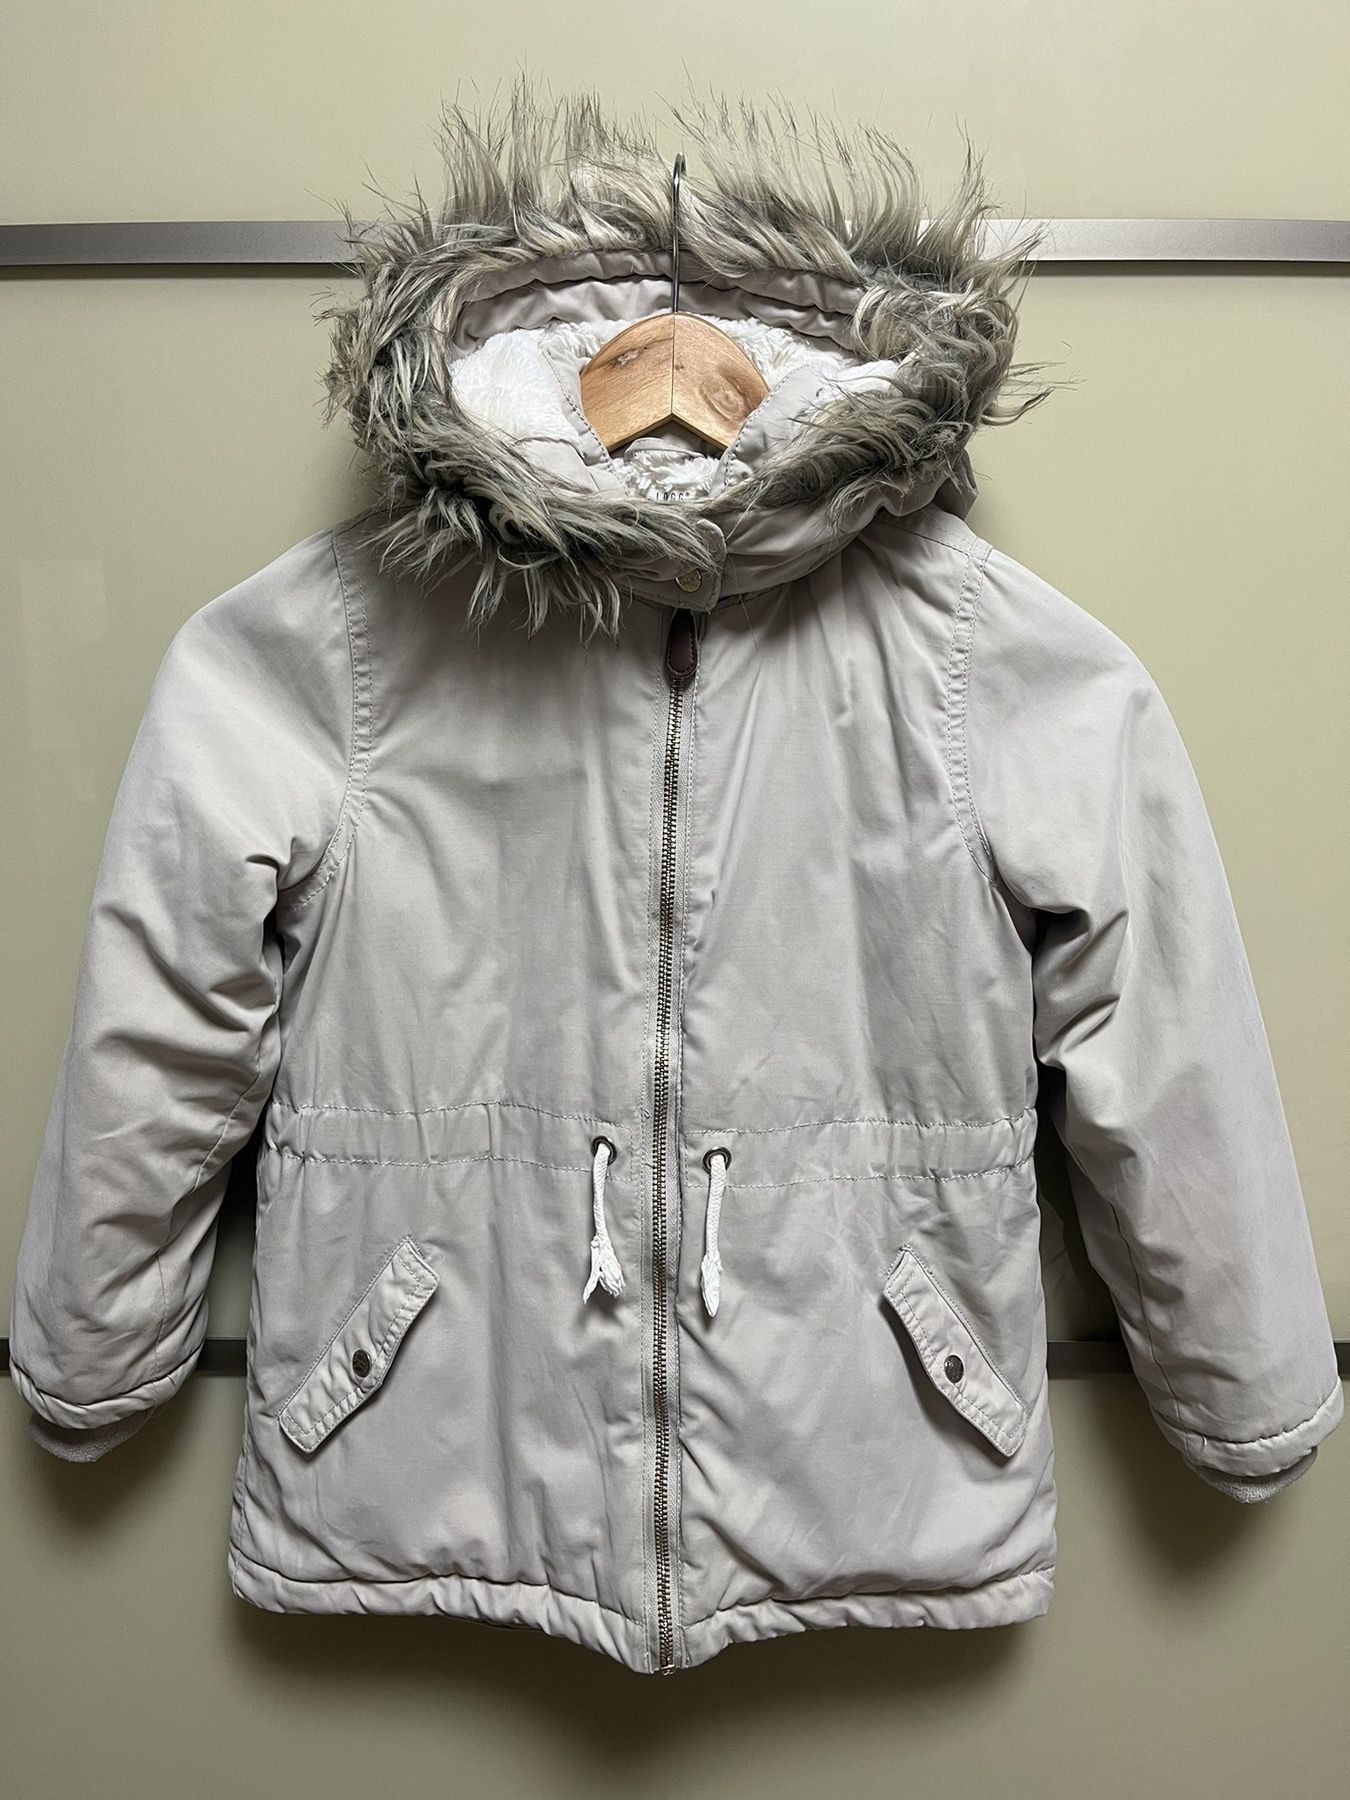 Зимова стильна курточка фірми HM на ріст 128 см.